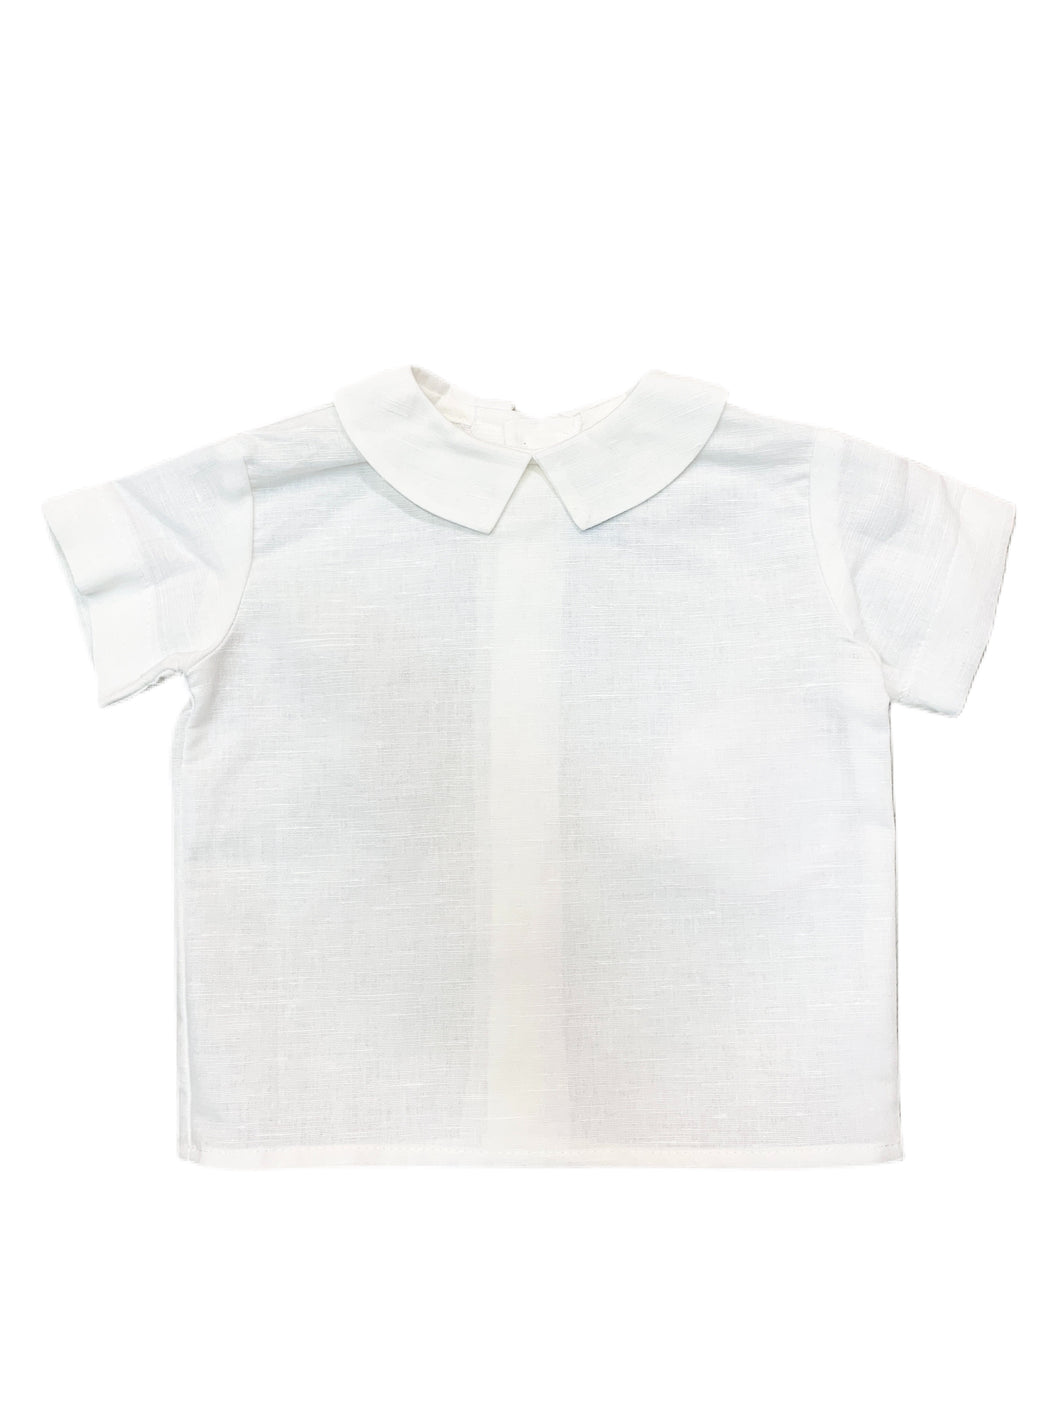 Funtasia Too White Linen Peter Pan Shirt